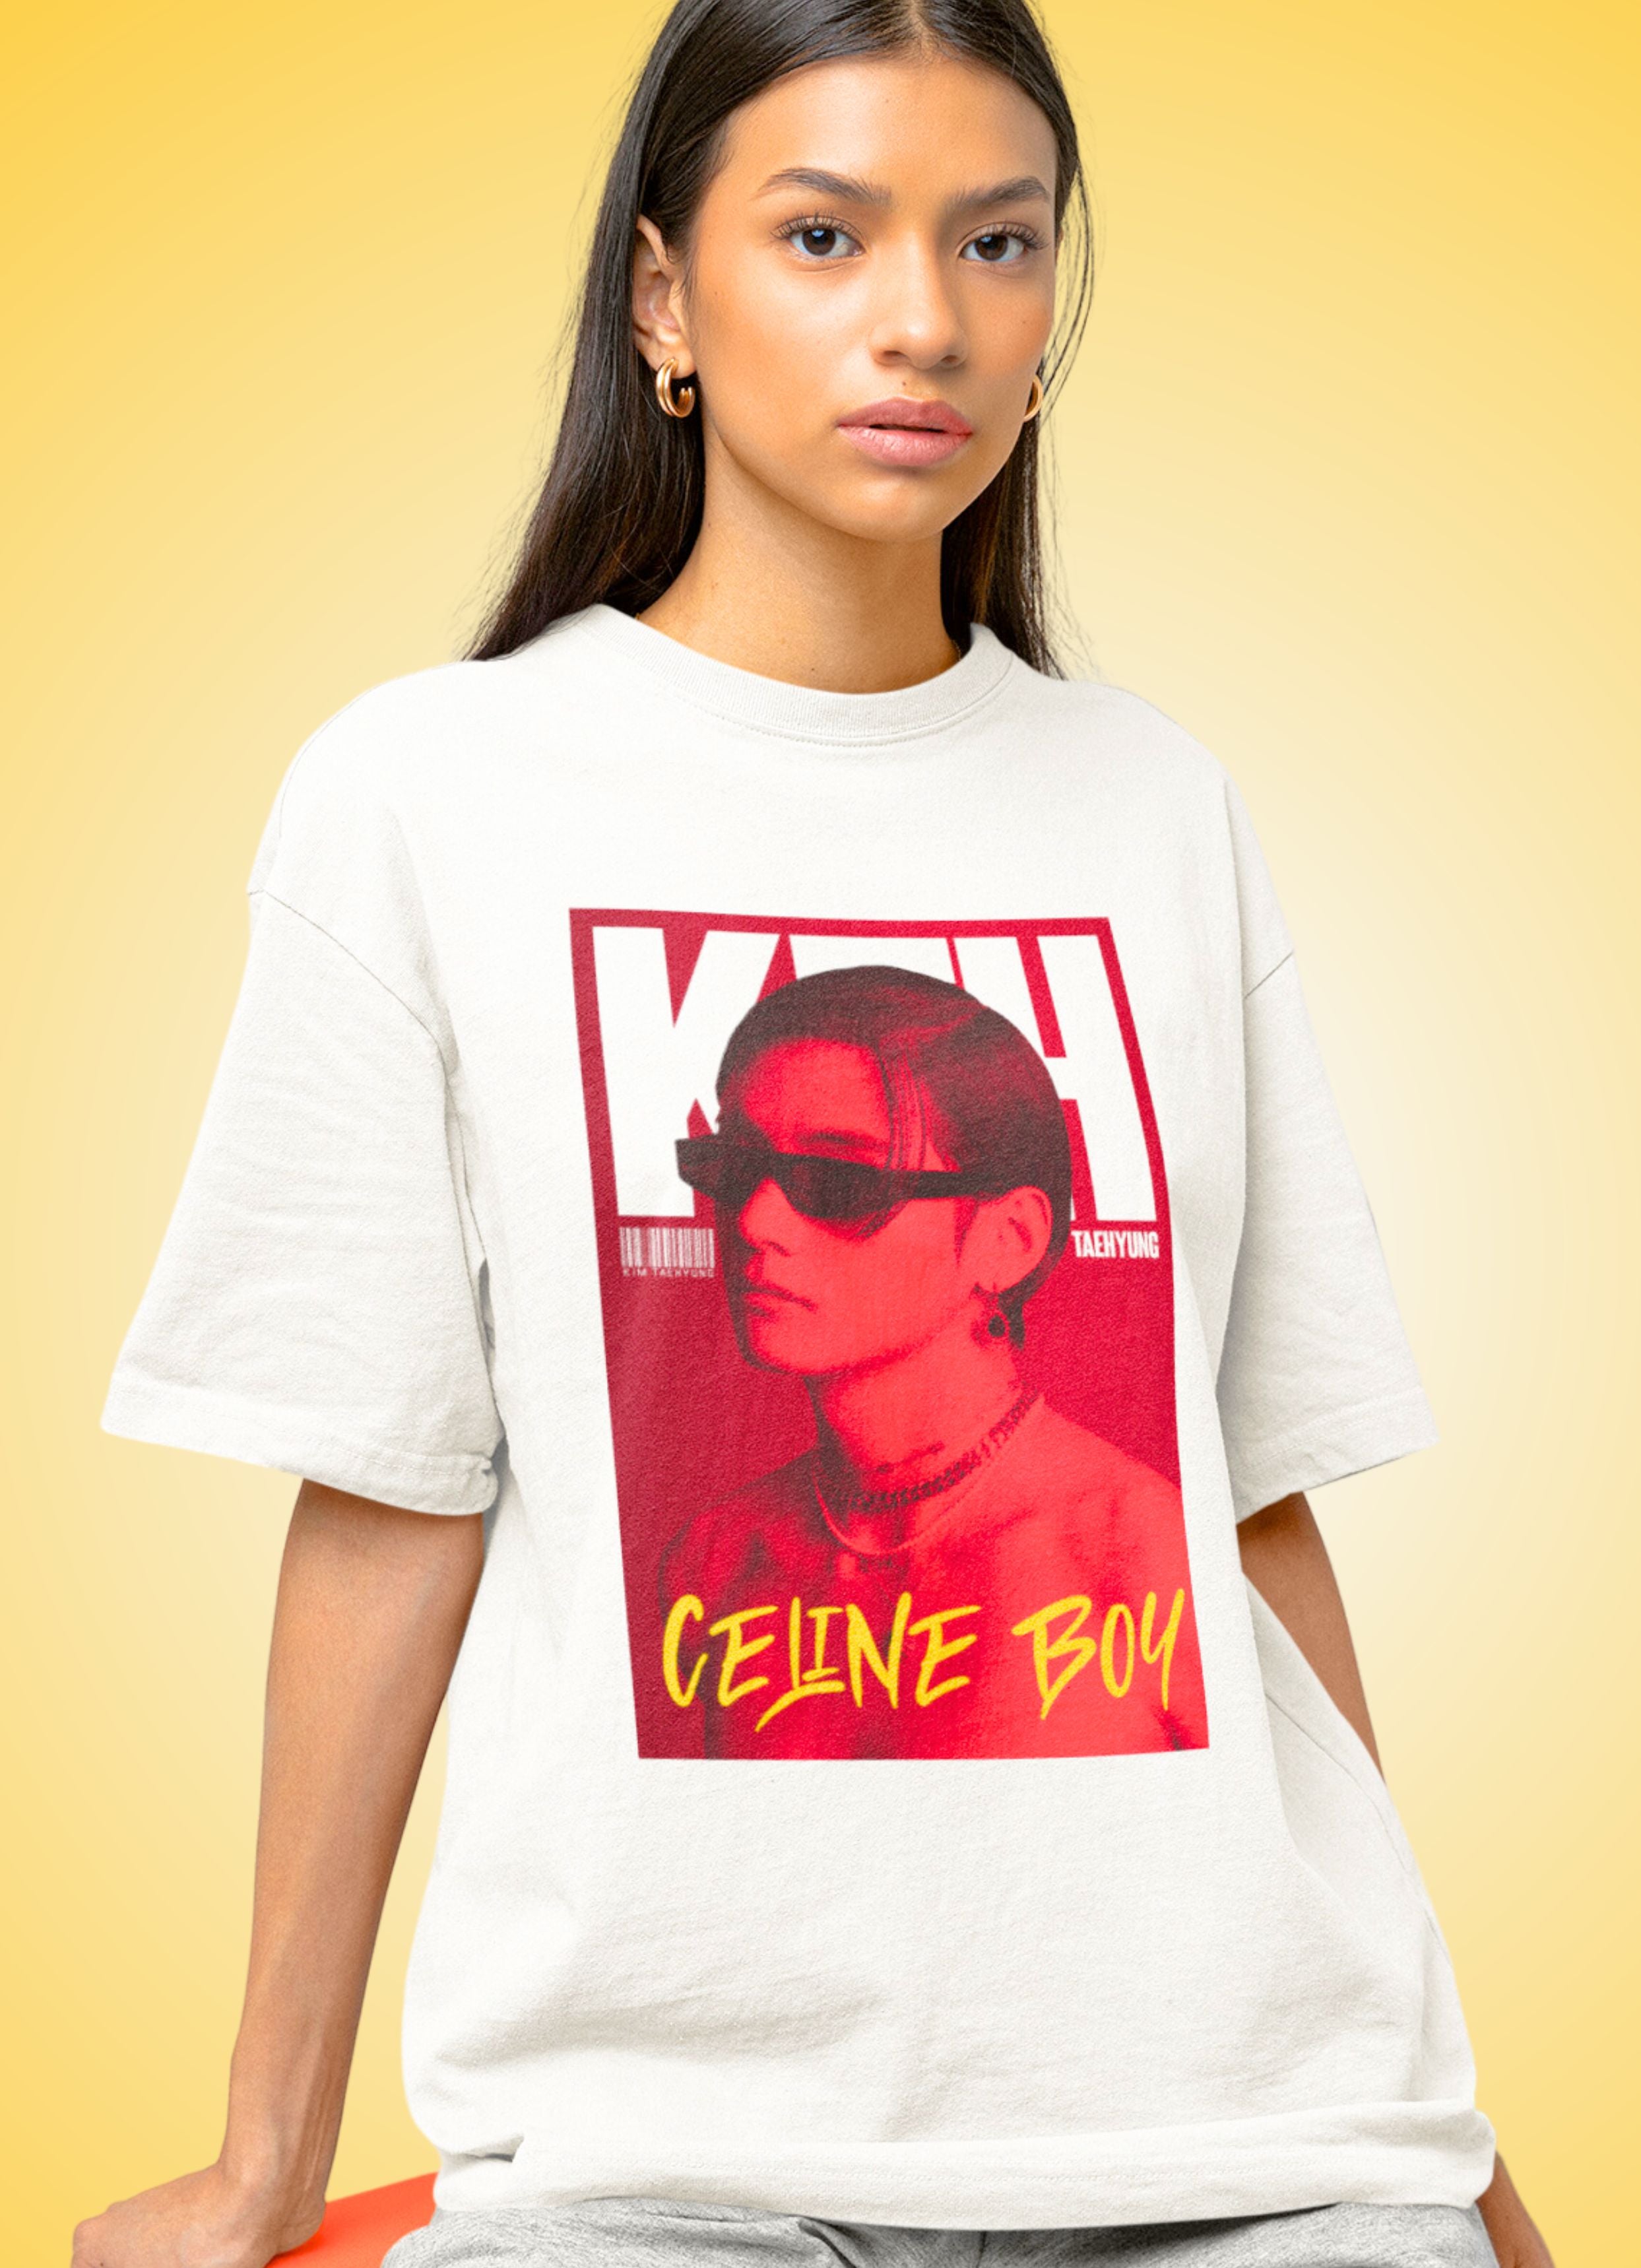 Celine Boy 2 Oversized Unisex T-shirt